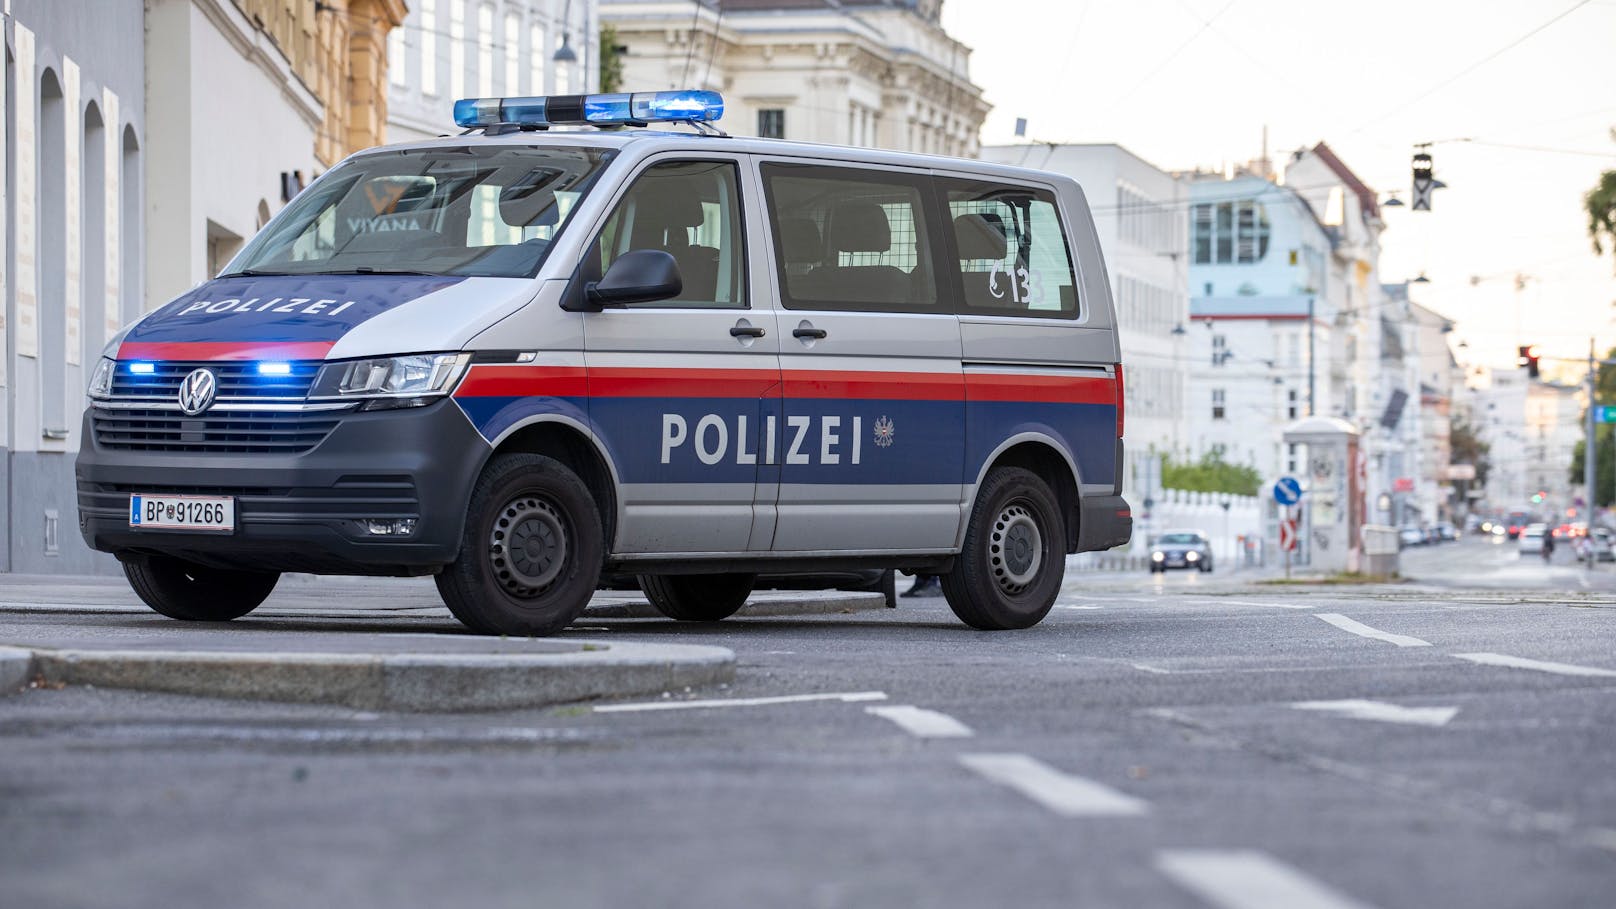 23-Jähriger versteckt sich in Wiener Lokal vor Polizei